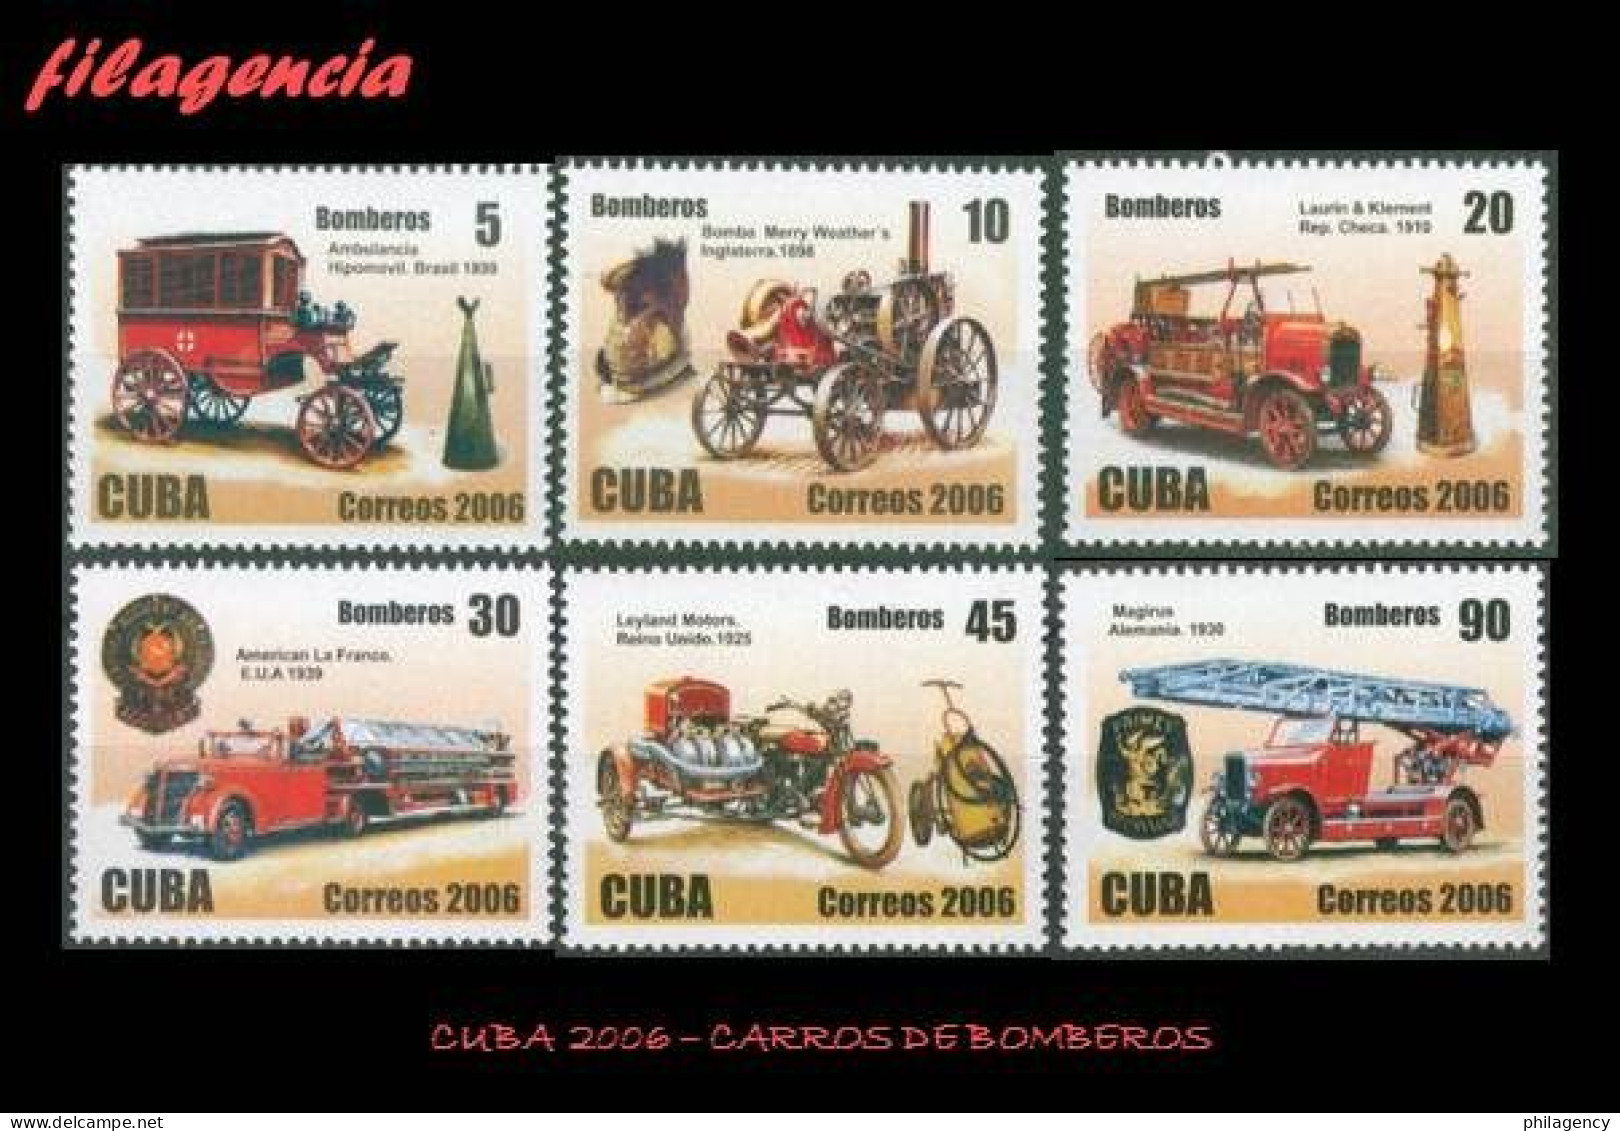 CUBA MINT. 2006-30 ANTIGUOS CARROS DE BOMBEROS - Nuevos